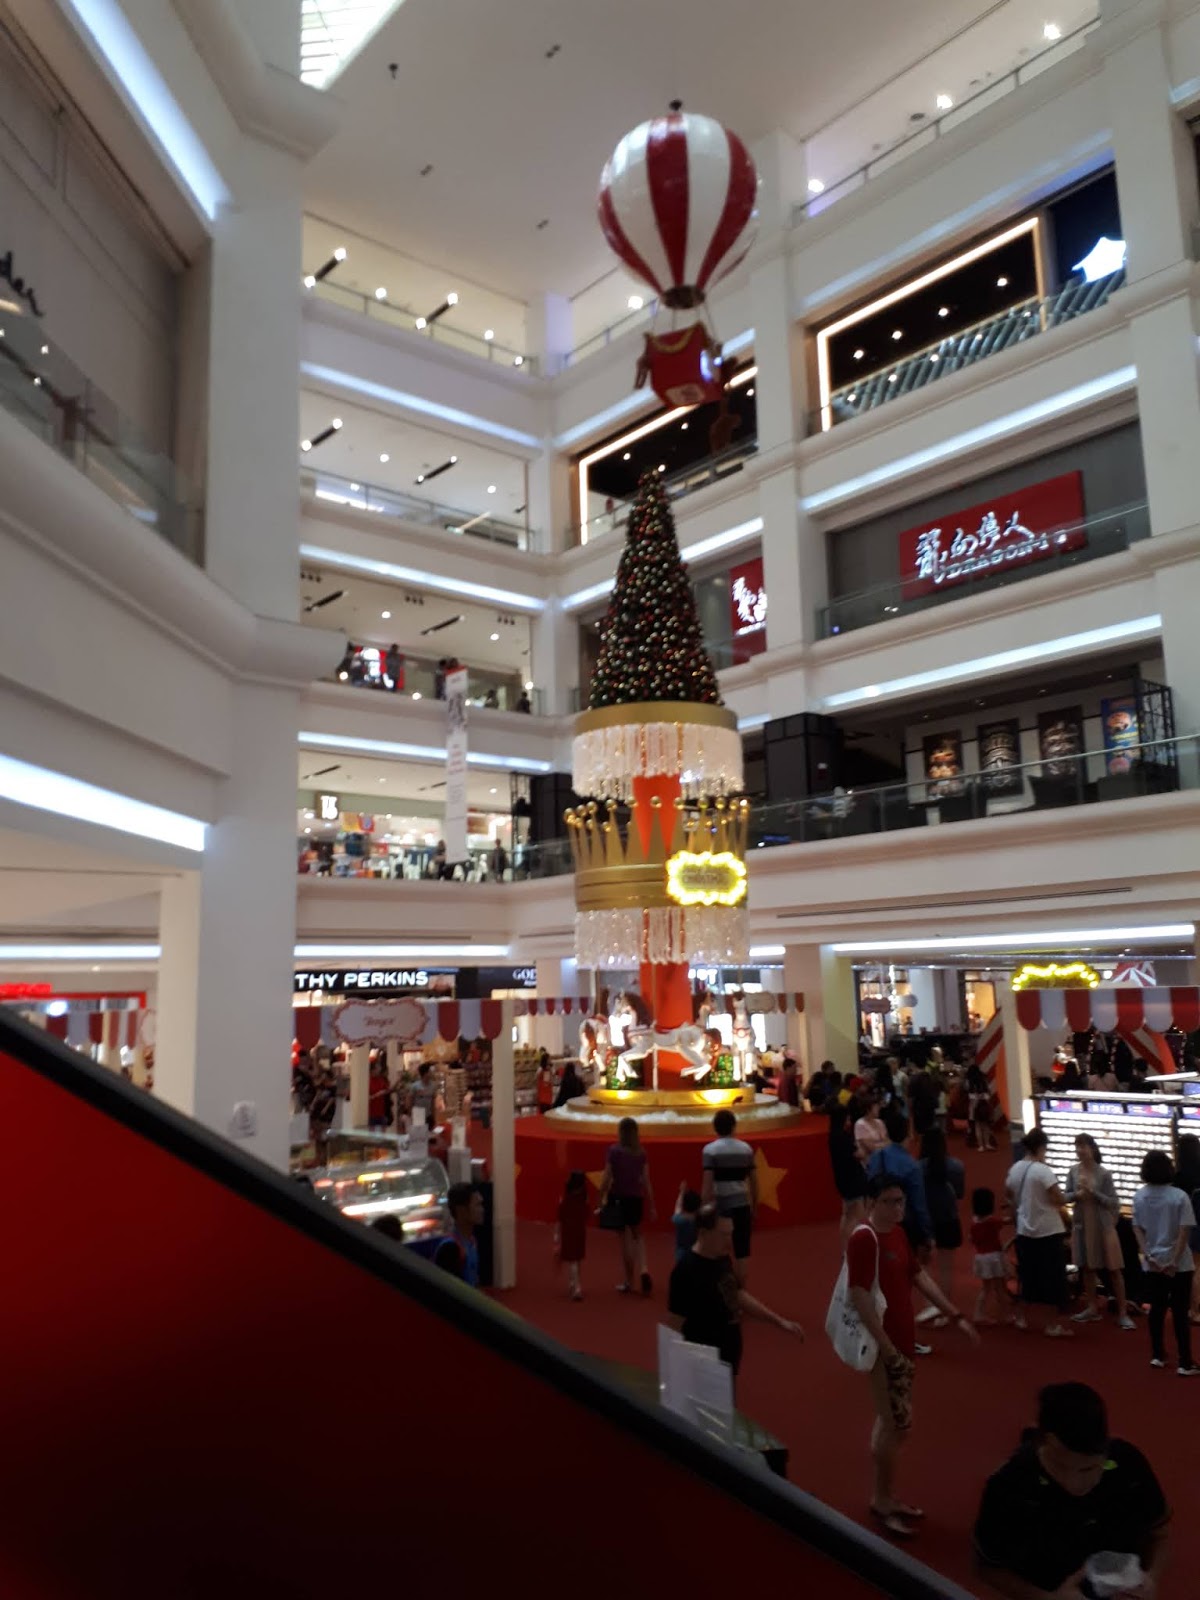 Jalan-jalan di Mall Terbesar Johor Bahru Malaysia - WEB ...